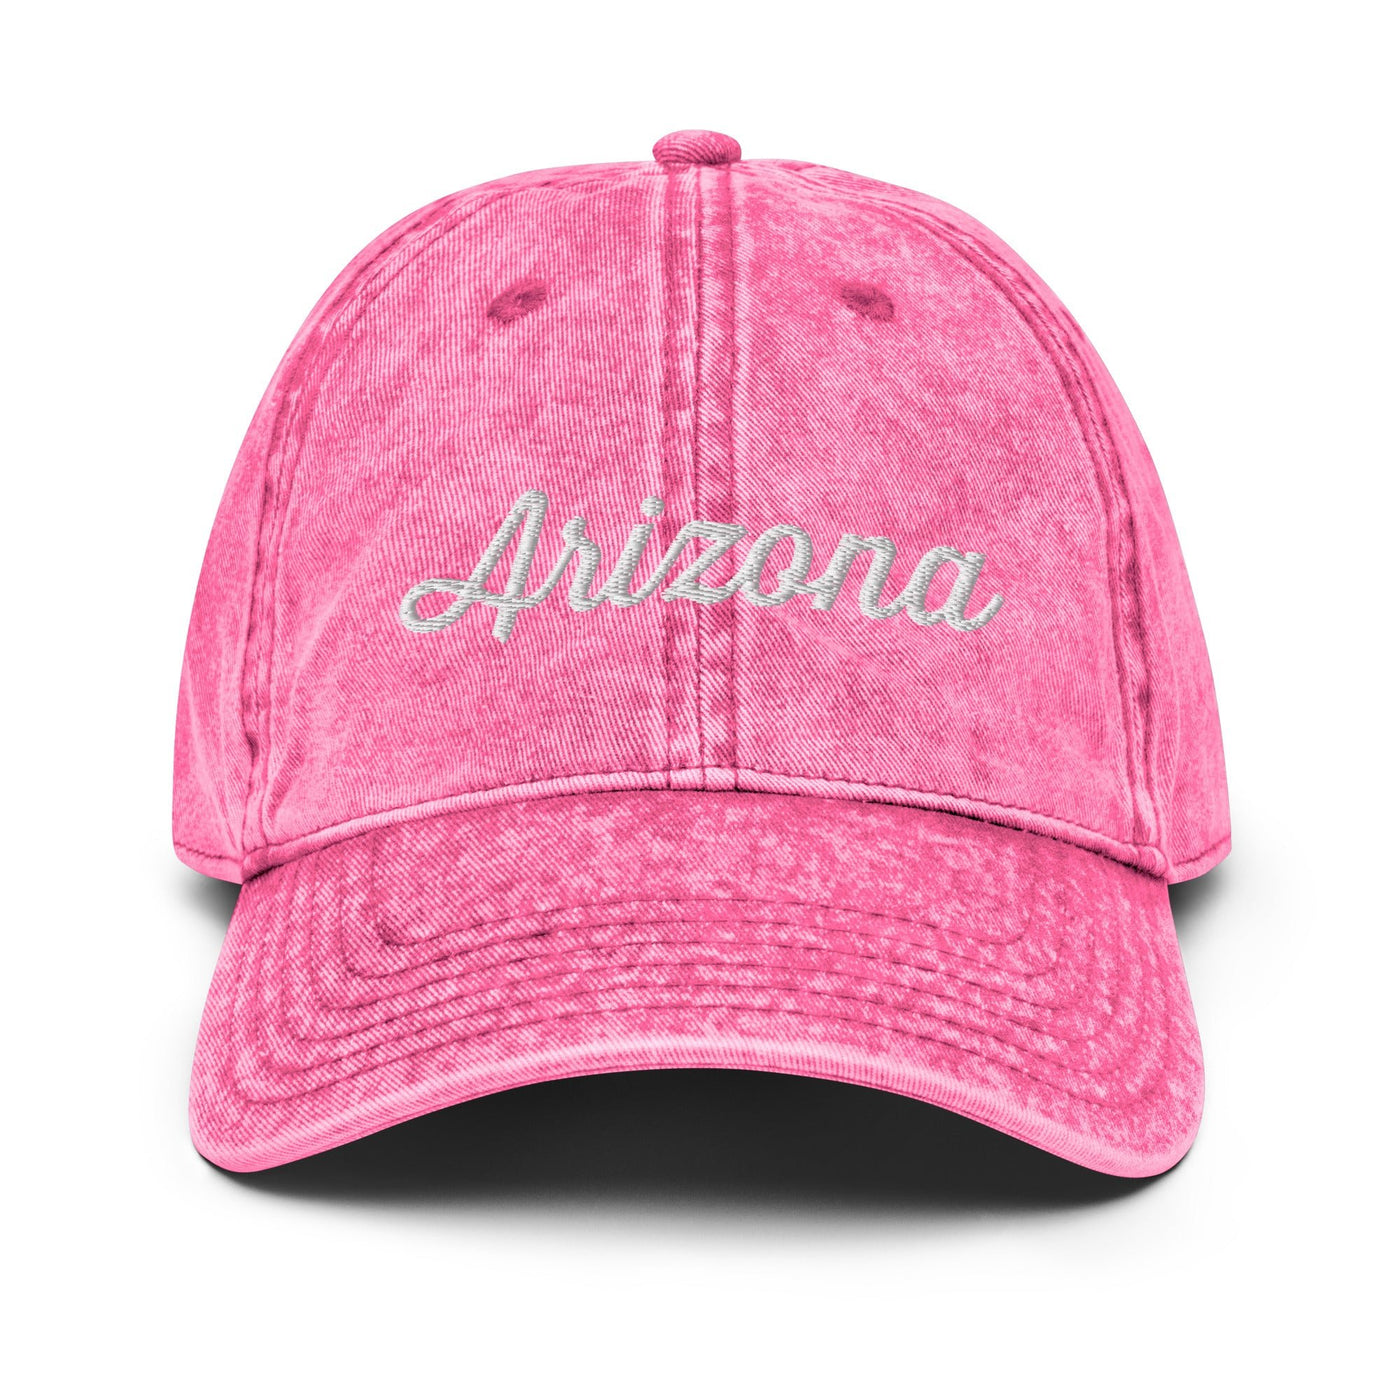 Arizona Hat - Ezra's Clothing